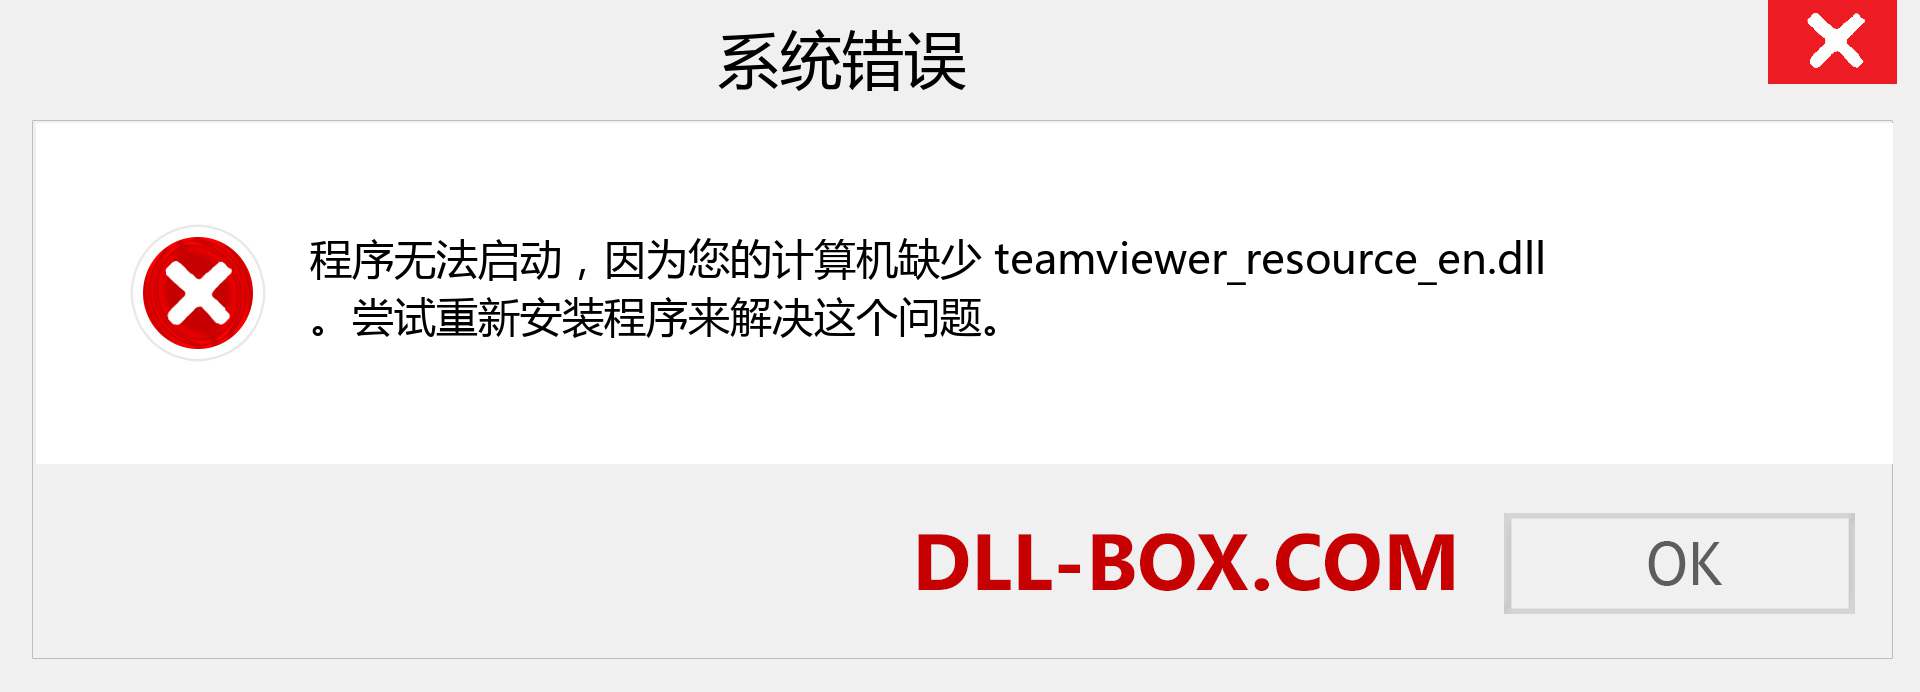 teamviewer_resource_en.dll 文件丢失？。 适用于 Windows 7、8、10 的下载 - 修复 Windows、照片、图像上的 teamviewer_resource_en dll 丢失错误